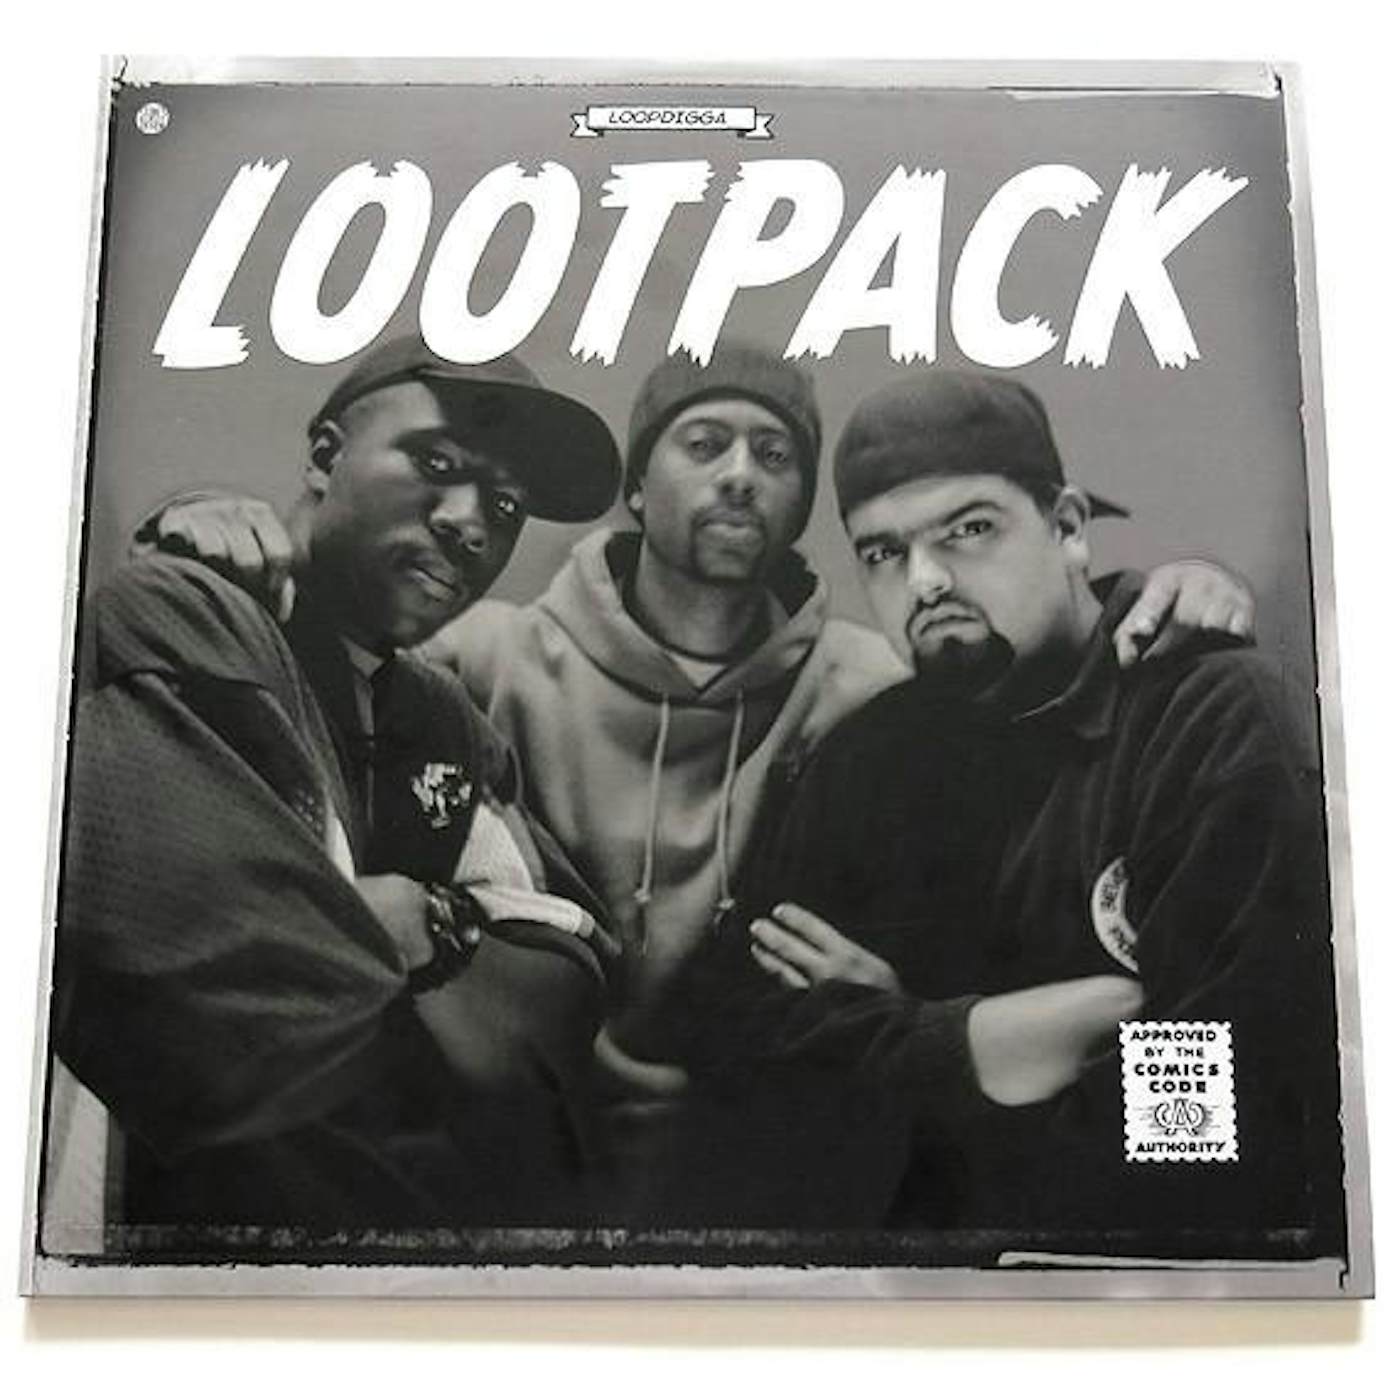 Lootpack LOOPDIGGA EP Vinyl Record